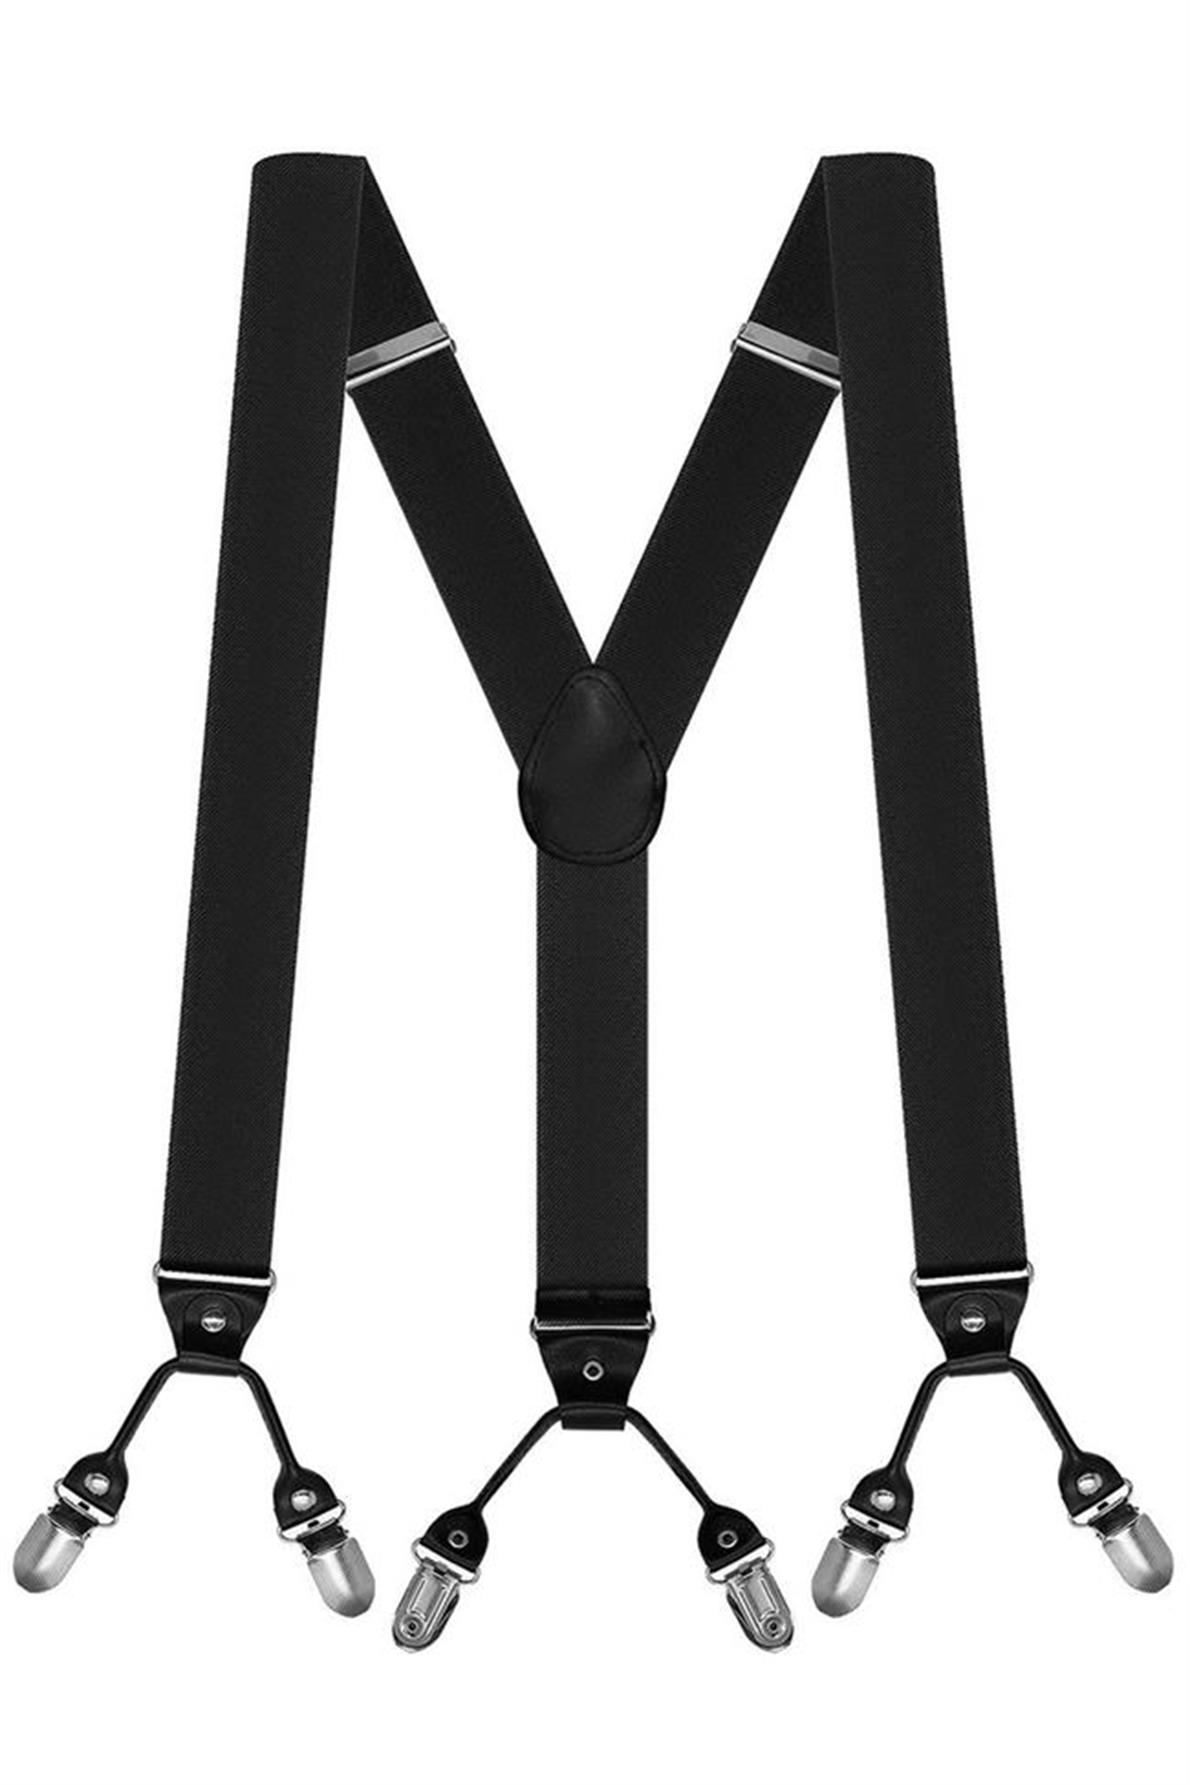 Elrozo Metal 6 Klipsli Unisex Siyah Pantolon Askısı - Tek Ebat